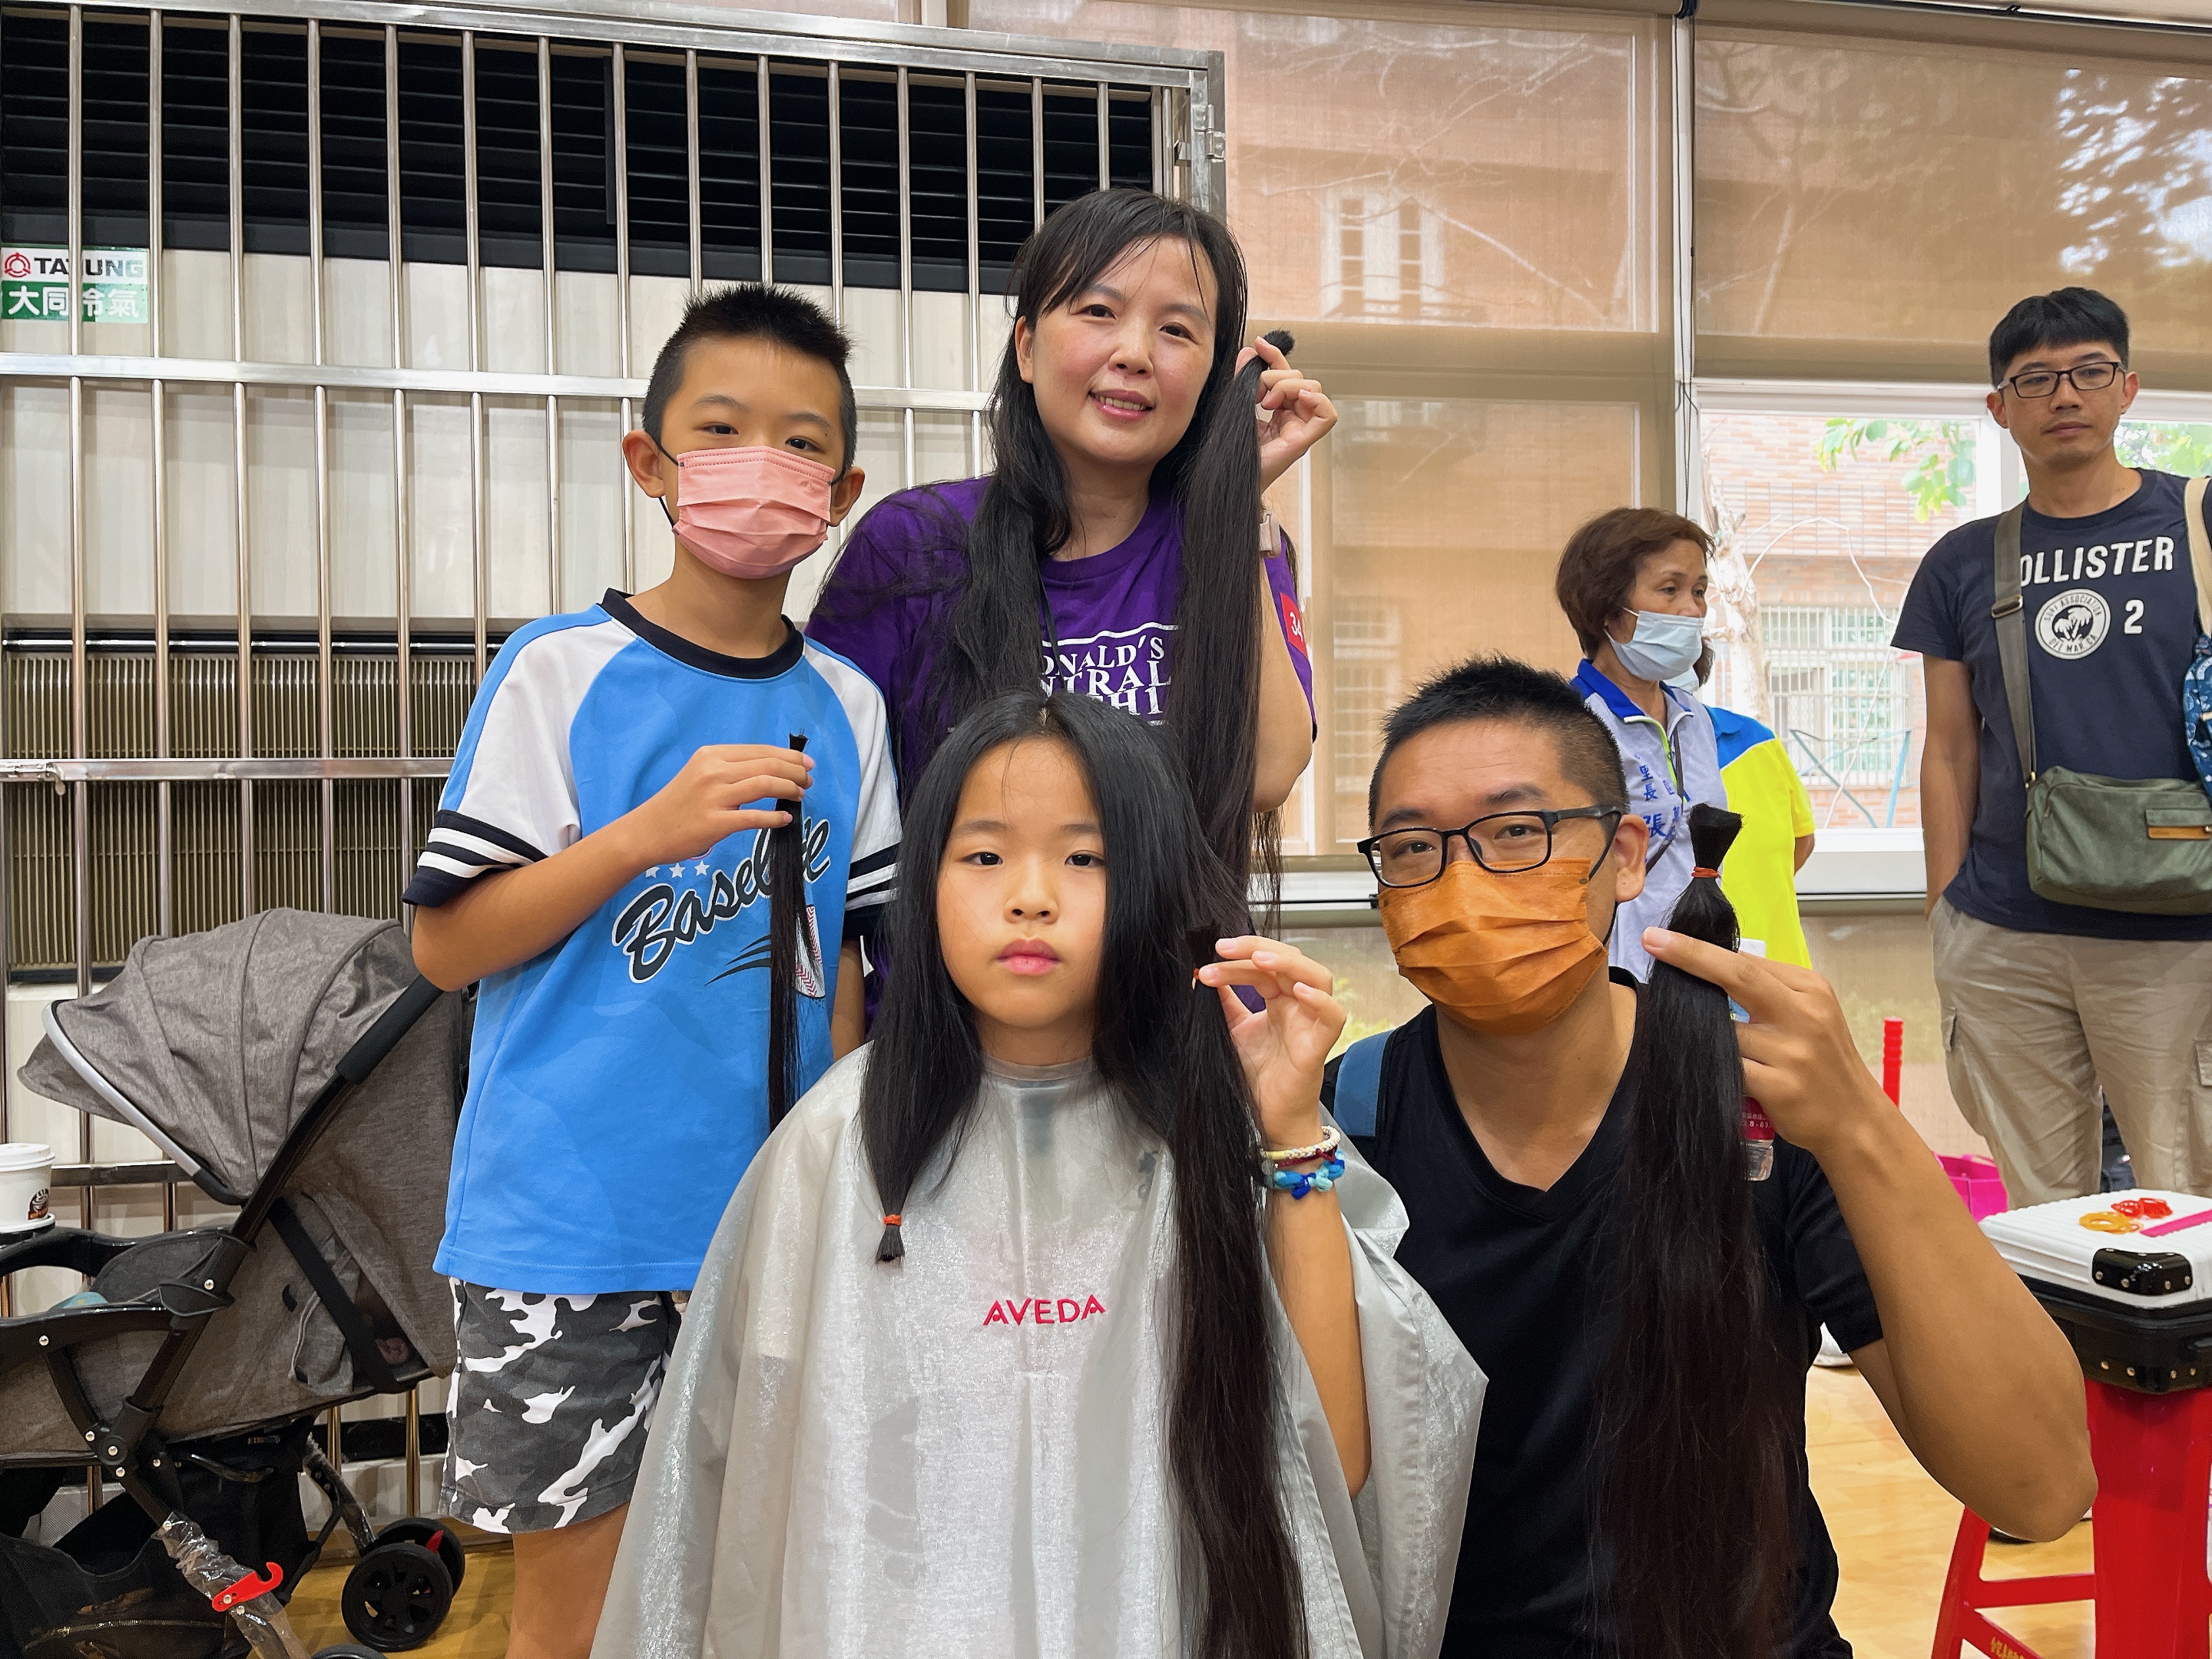 就读国小5年级的李宇馨（前排左），因不舍妈妈罹癌化疗失去头发，6年前还在读幼儿园时就开始留发，希望「把头发借给妈妈」应。记者朱冠谕／摄影